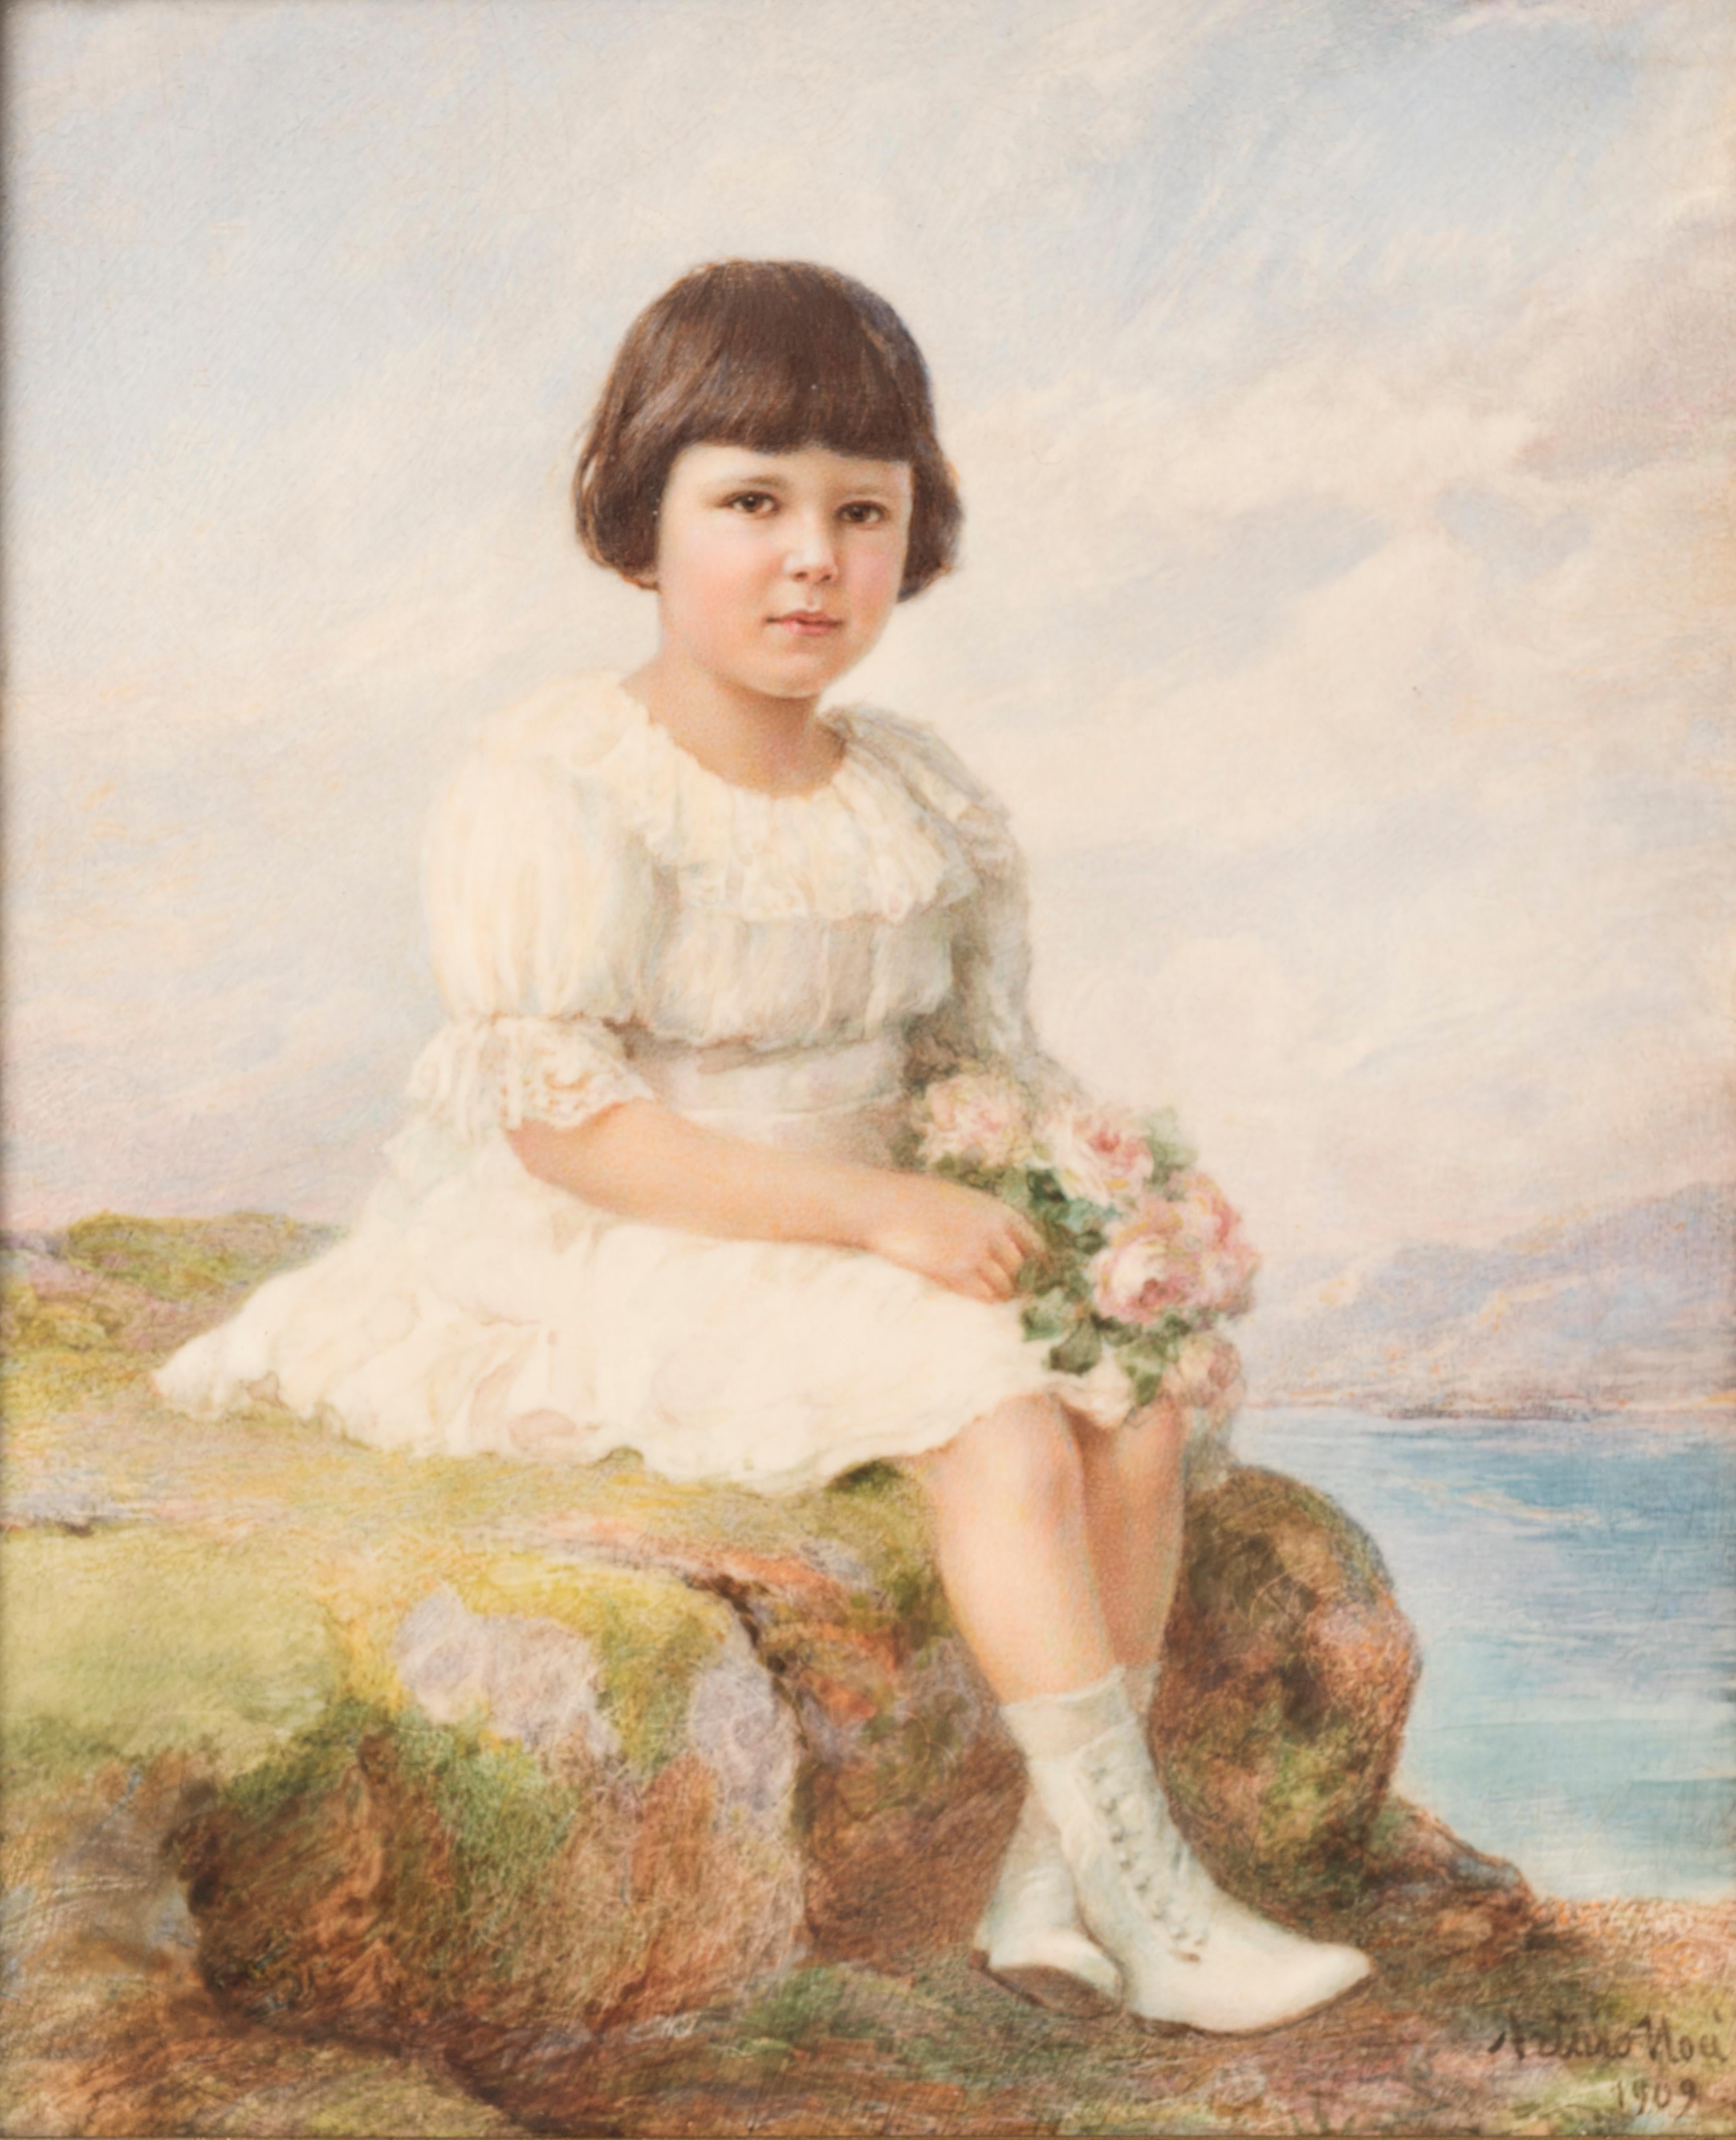 Portrait Painting Arturo Noci - Portrait d'enfant avec des fleurs dans les mains - Peinture miniature originale d'un enfant par A. Noci